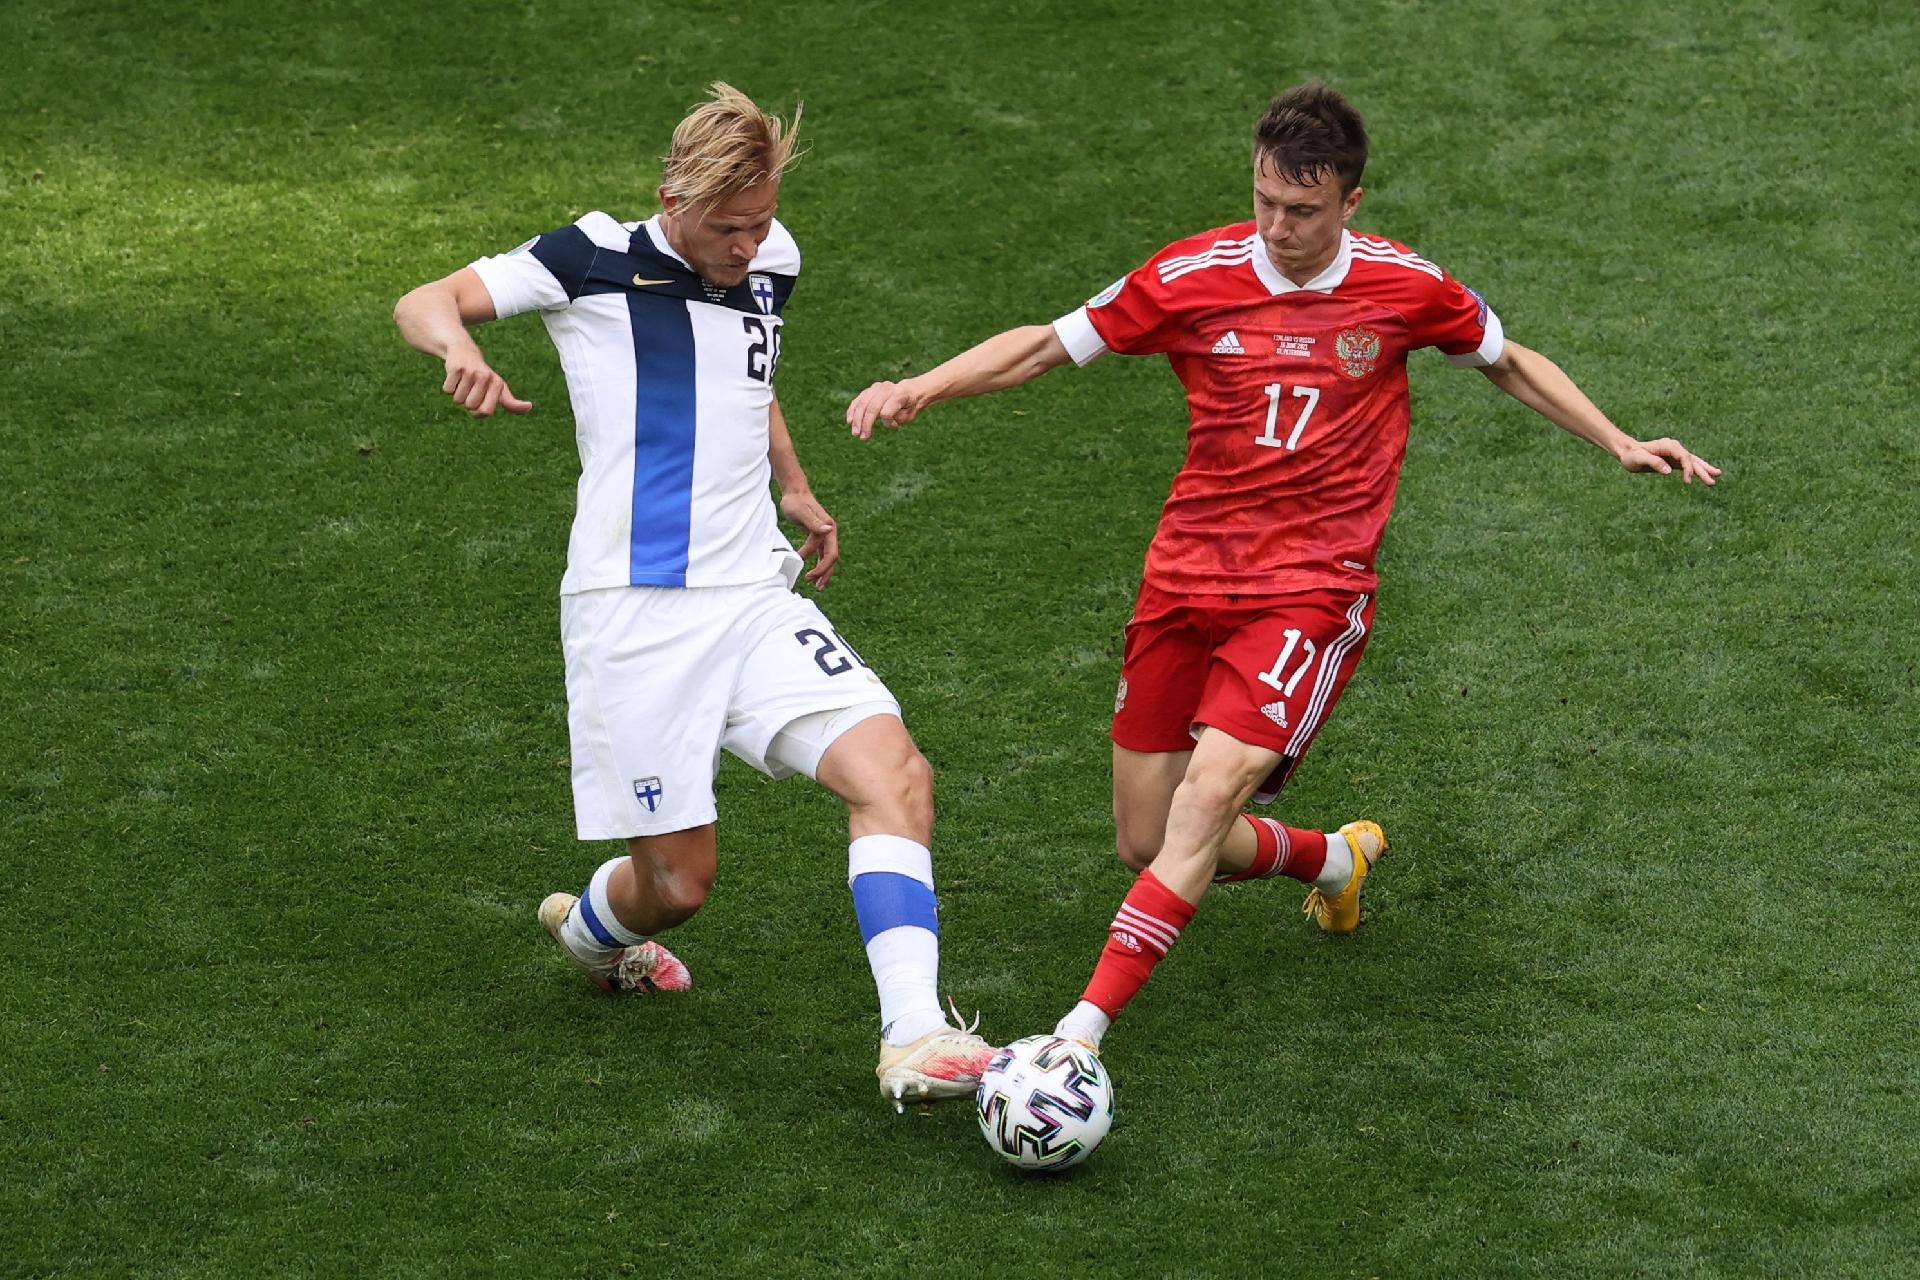 Polaco fora da seleção por estar a jogar na Rússia - Renascença